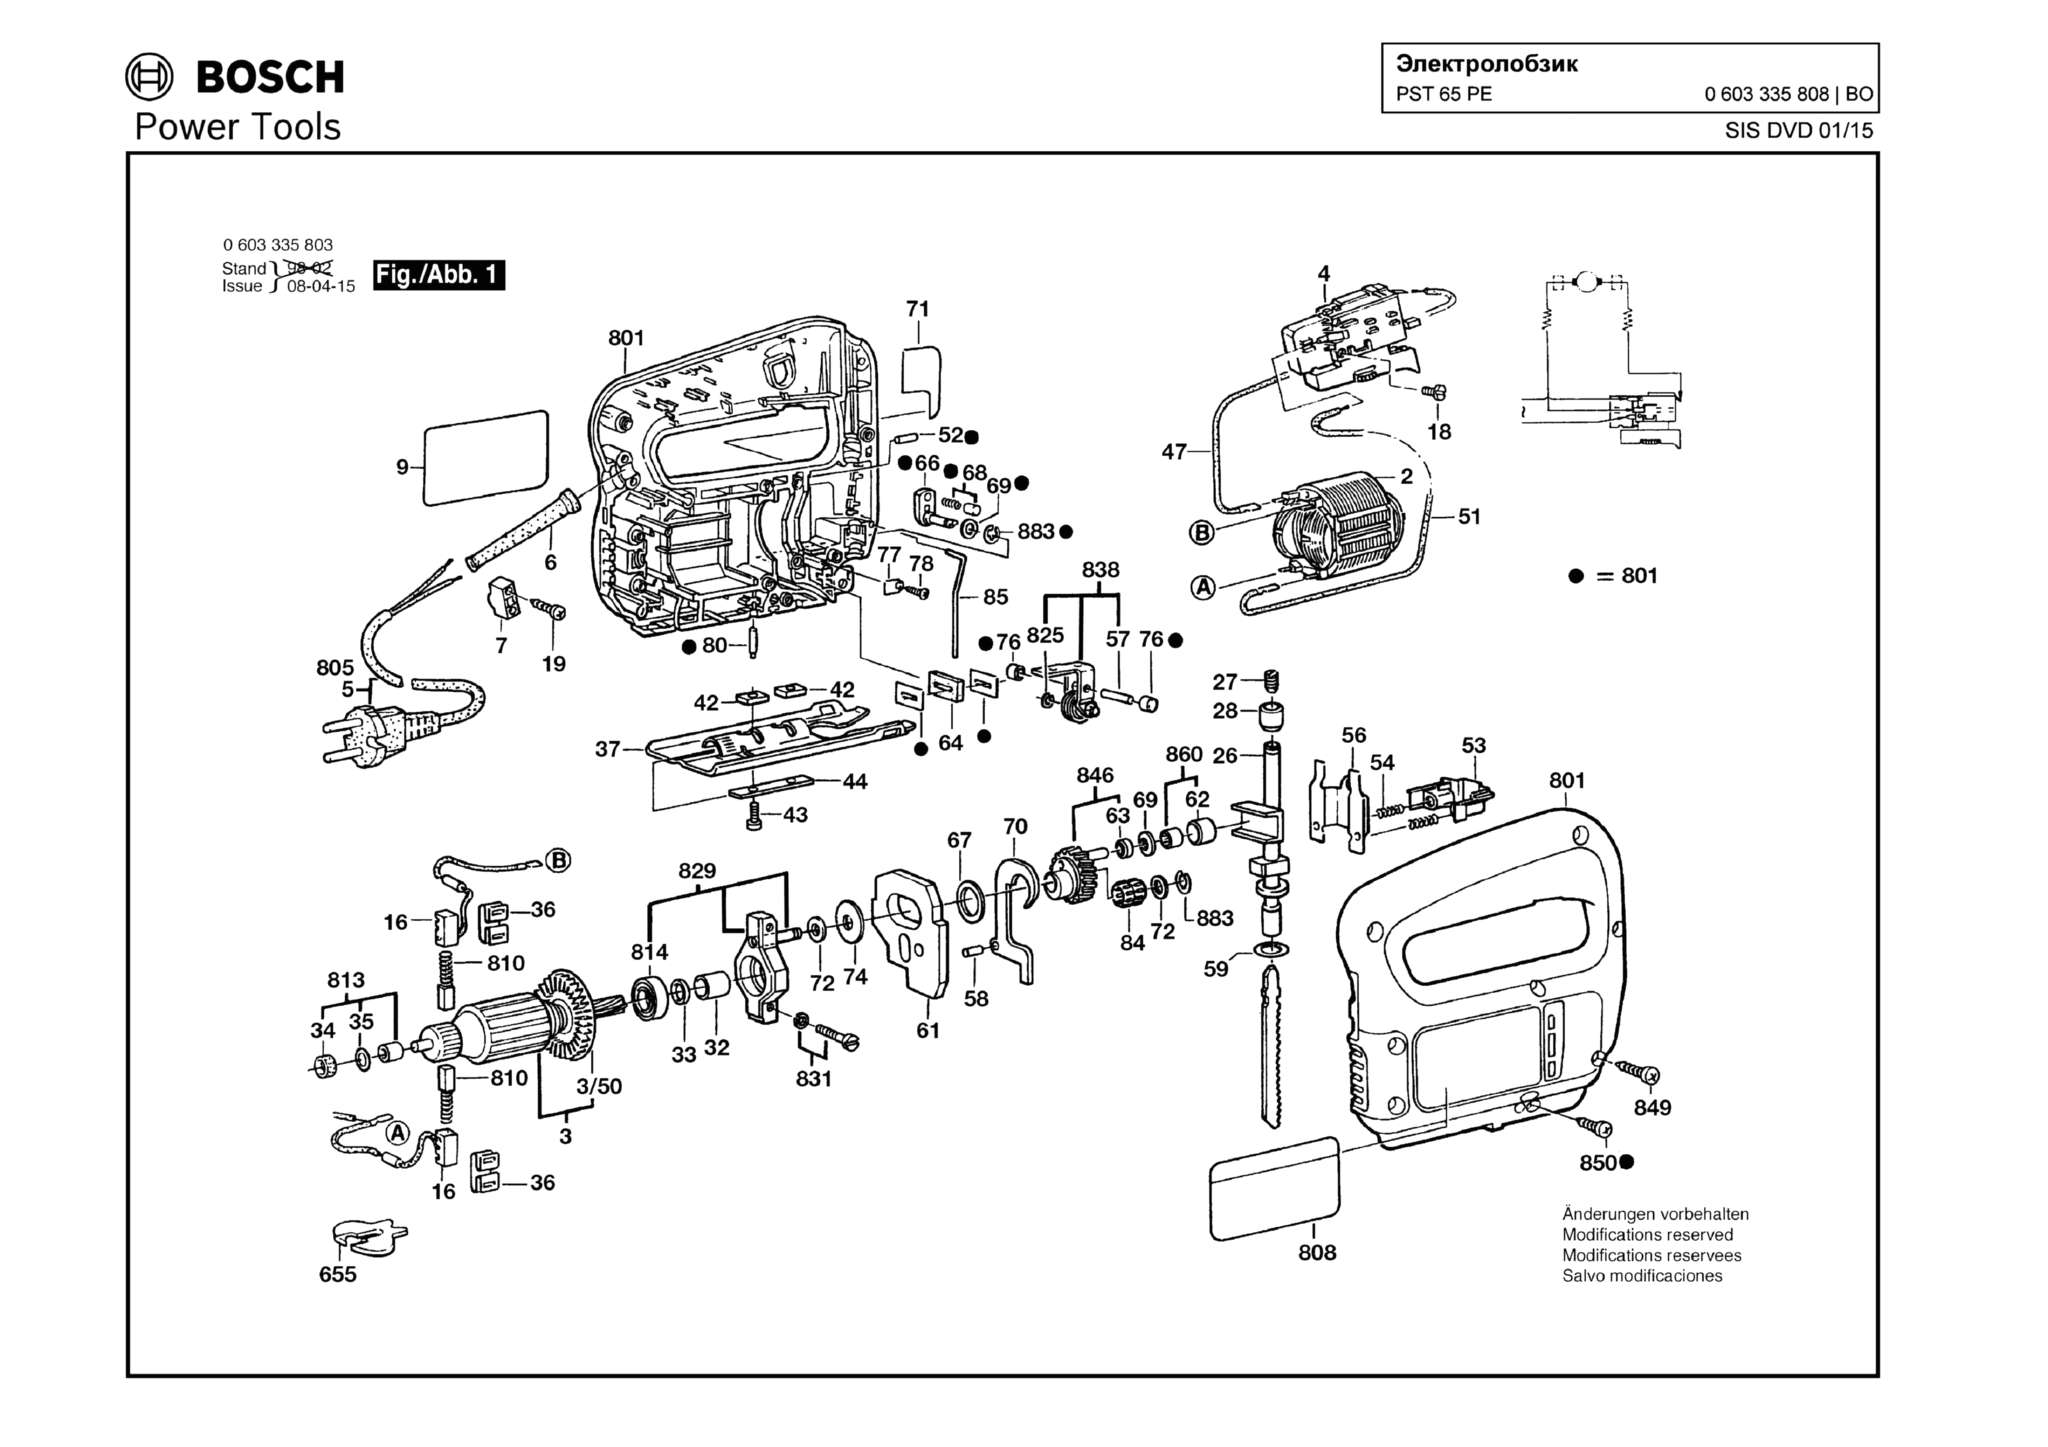 Запчасти, схема и деталировка Bosch PST 65 PE (ТИП 0603335808)